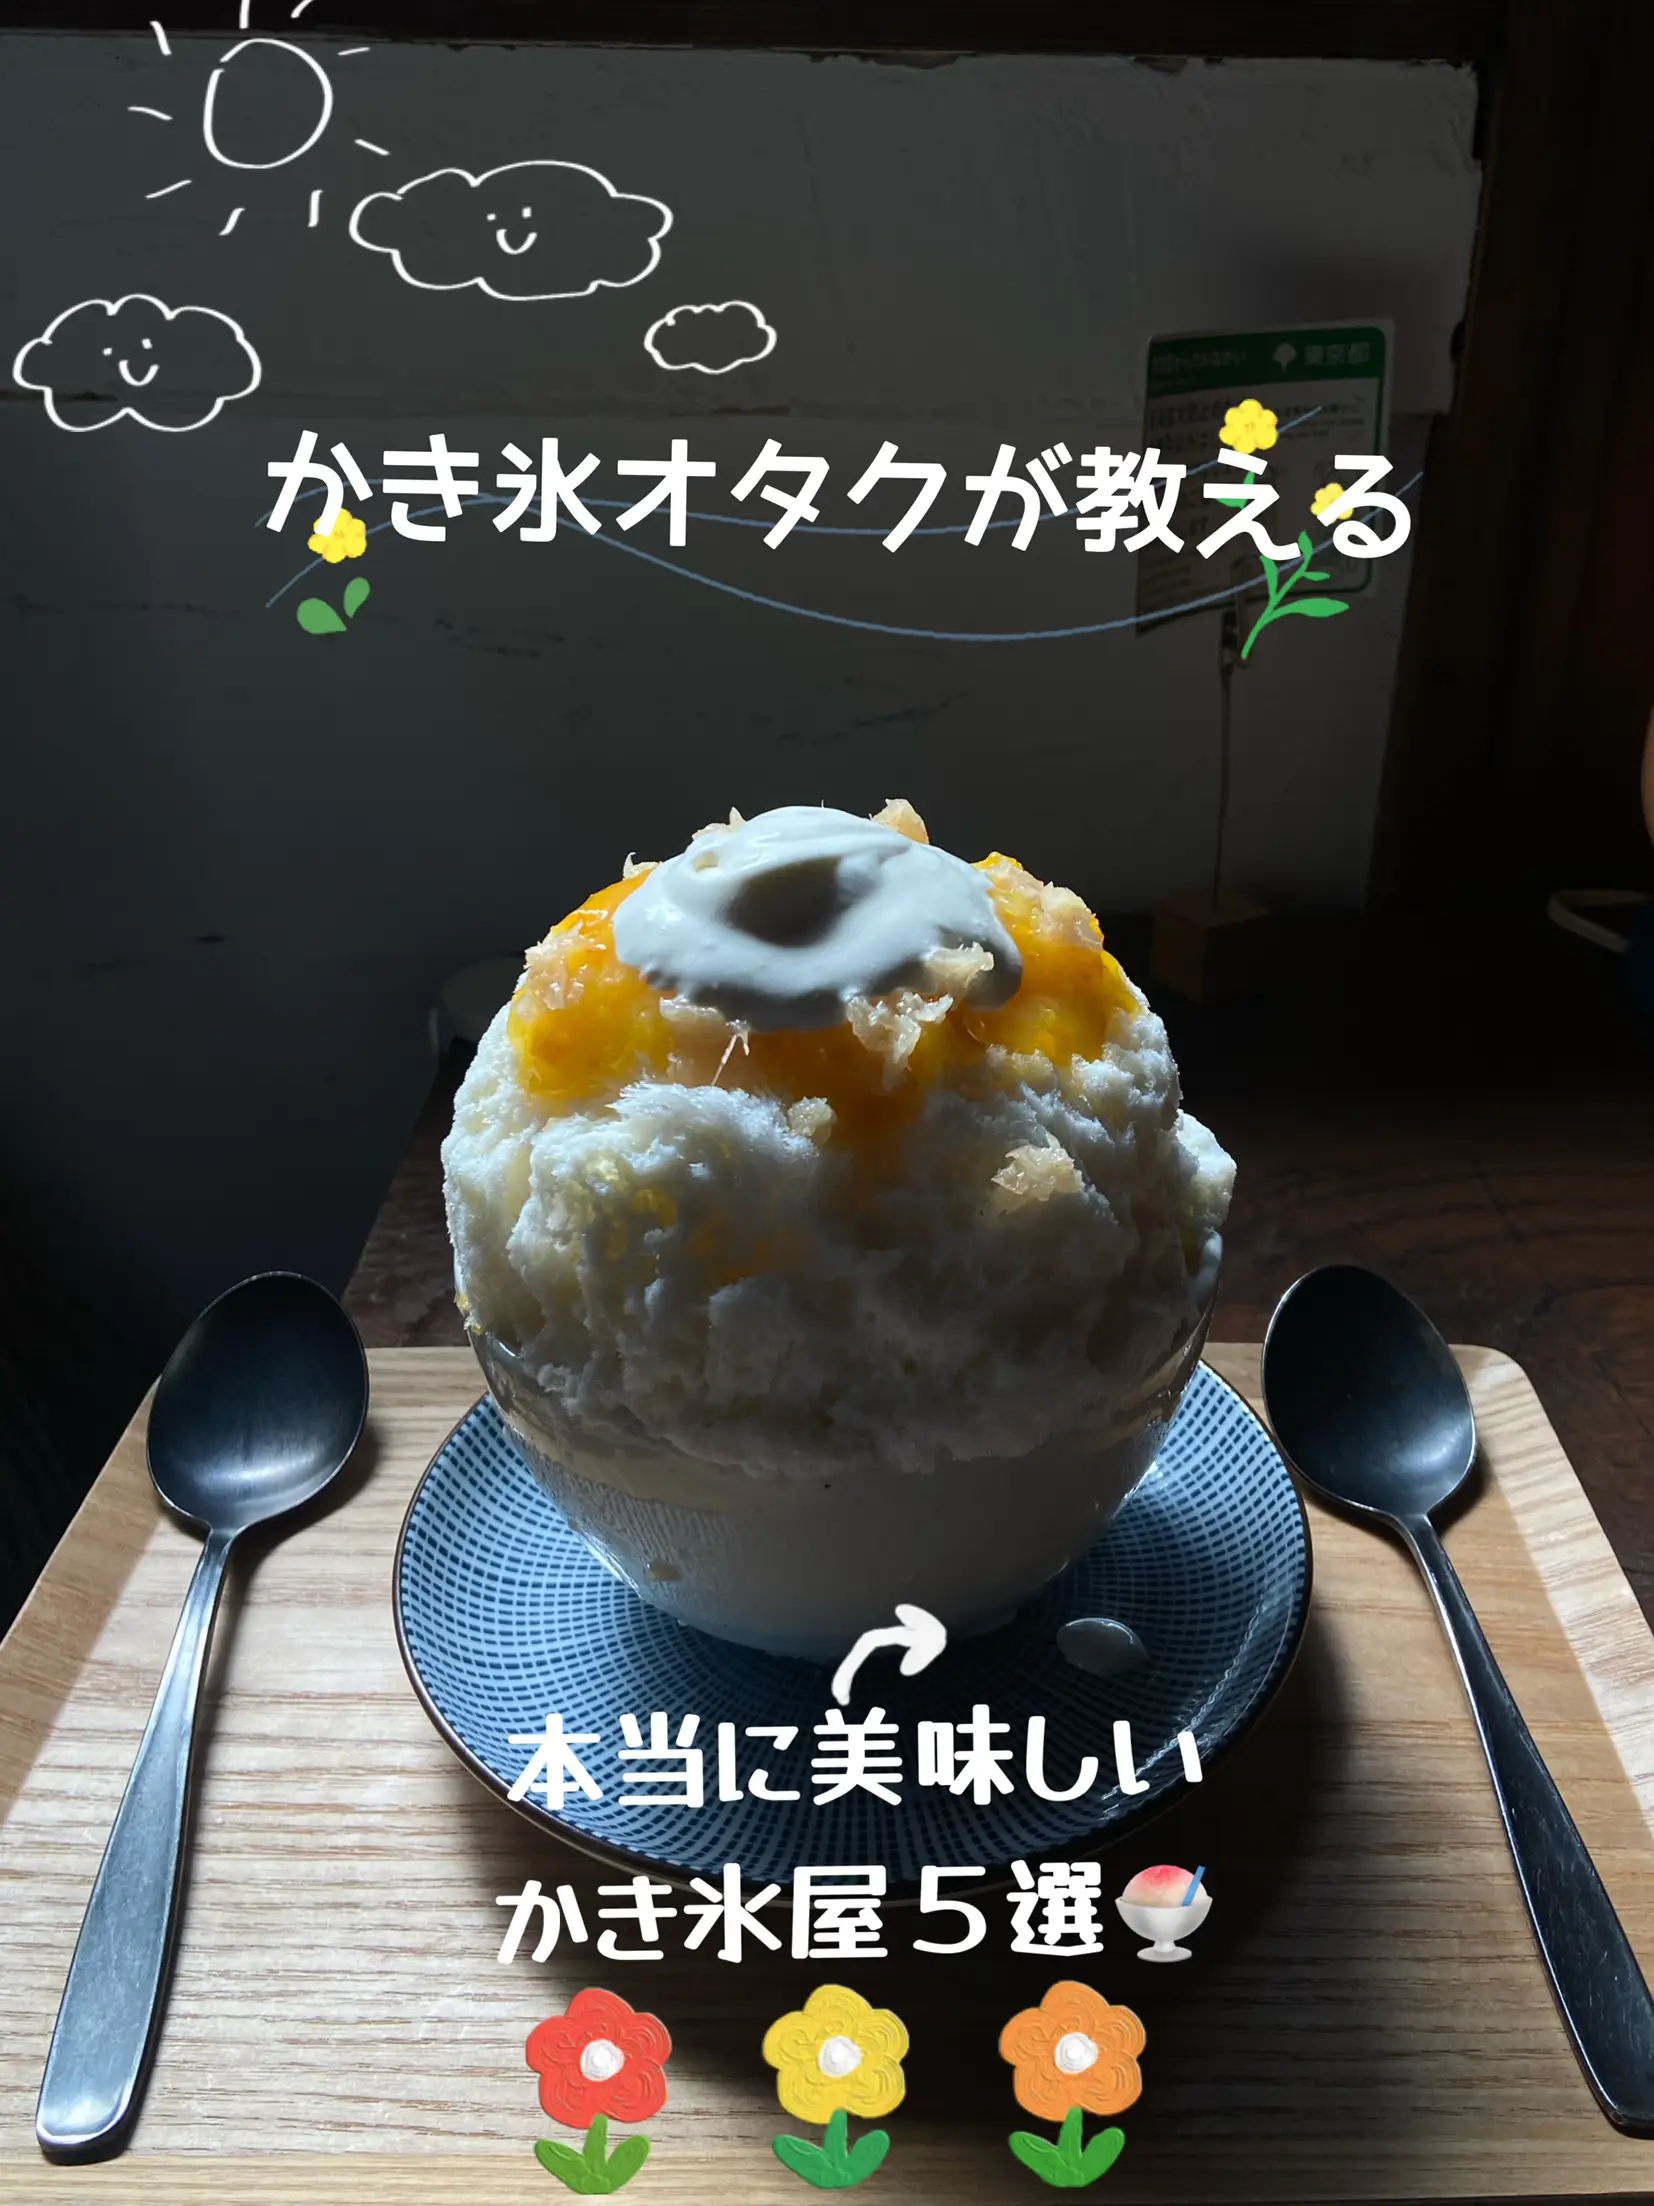 Otaku Ice Cream